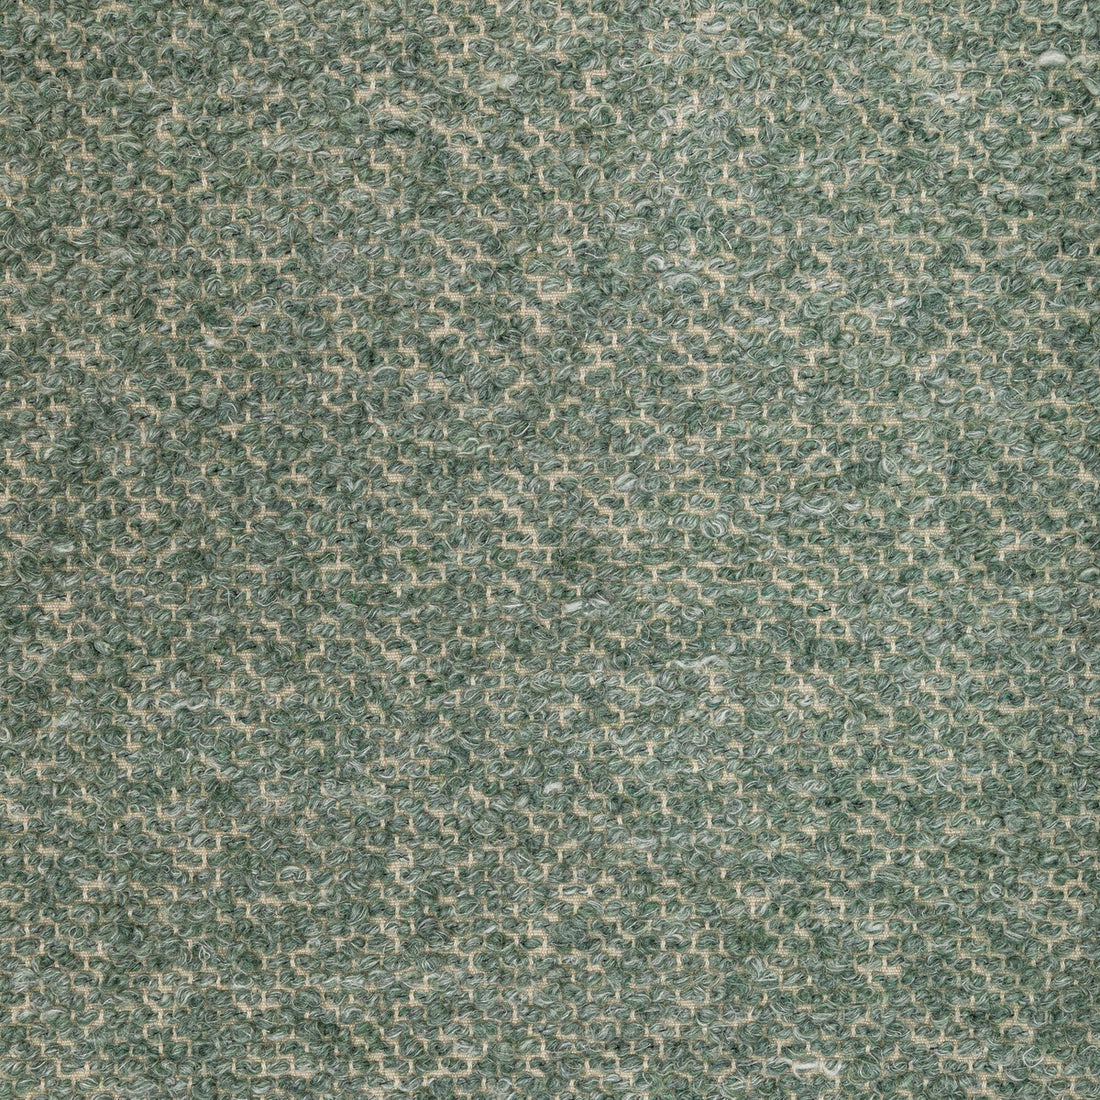 Kravet Design fabric in 36347-30 color - pattern 36347.30.0 - by Kravet Design